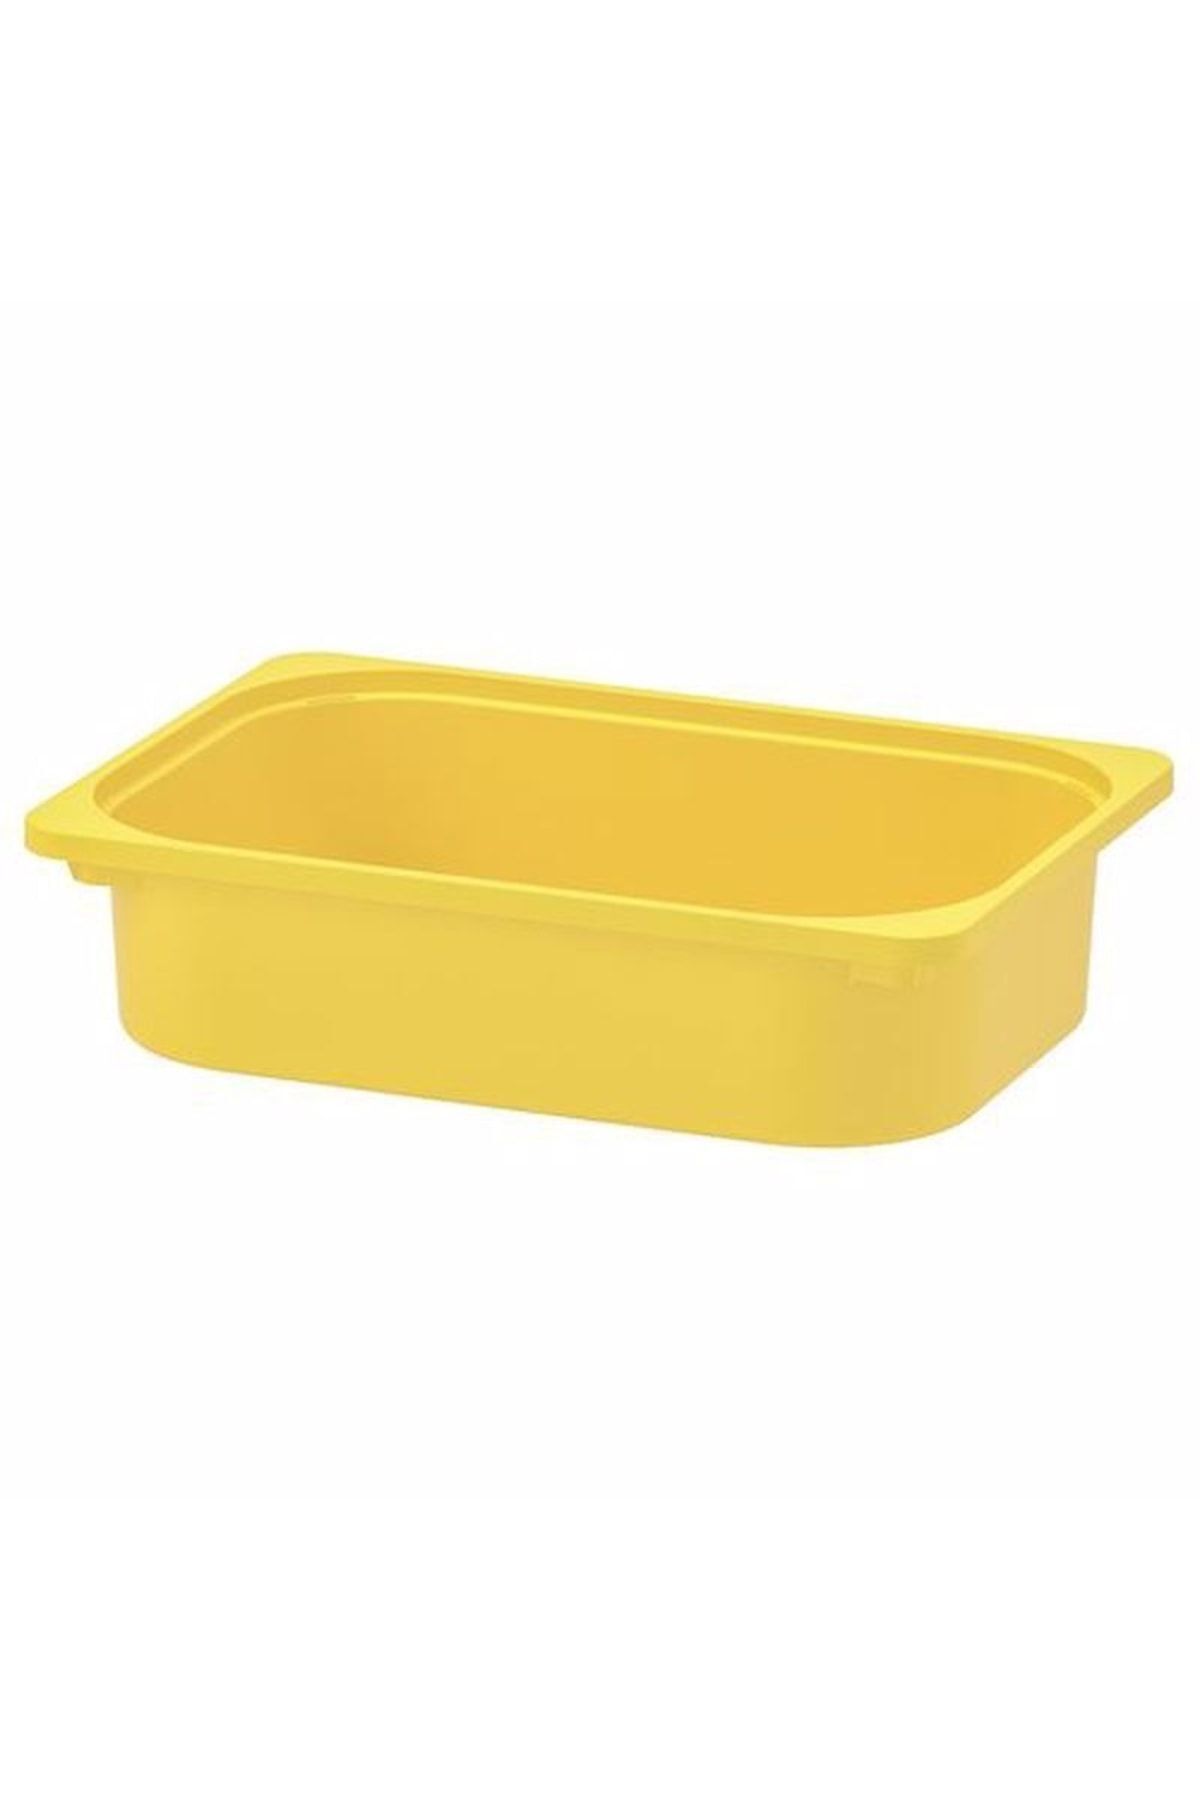 IKEA Trofast Saklama Kutusu, Sarı